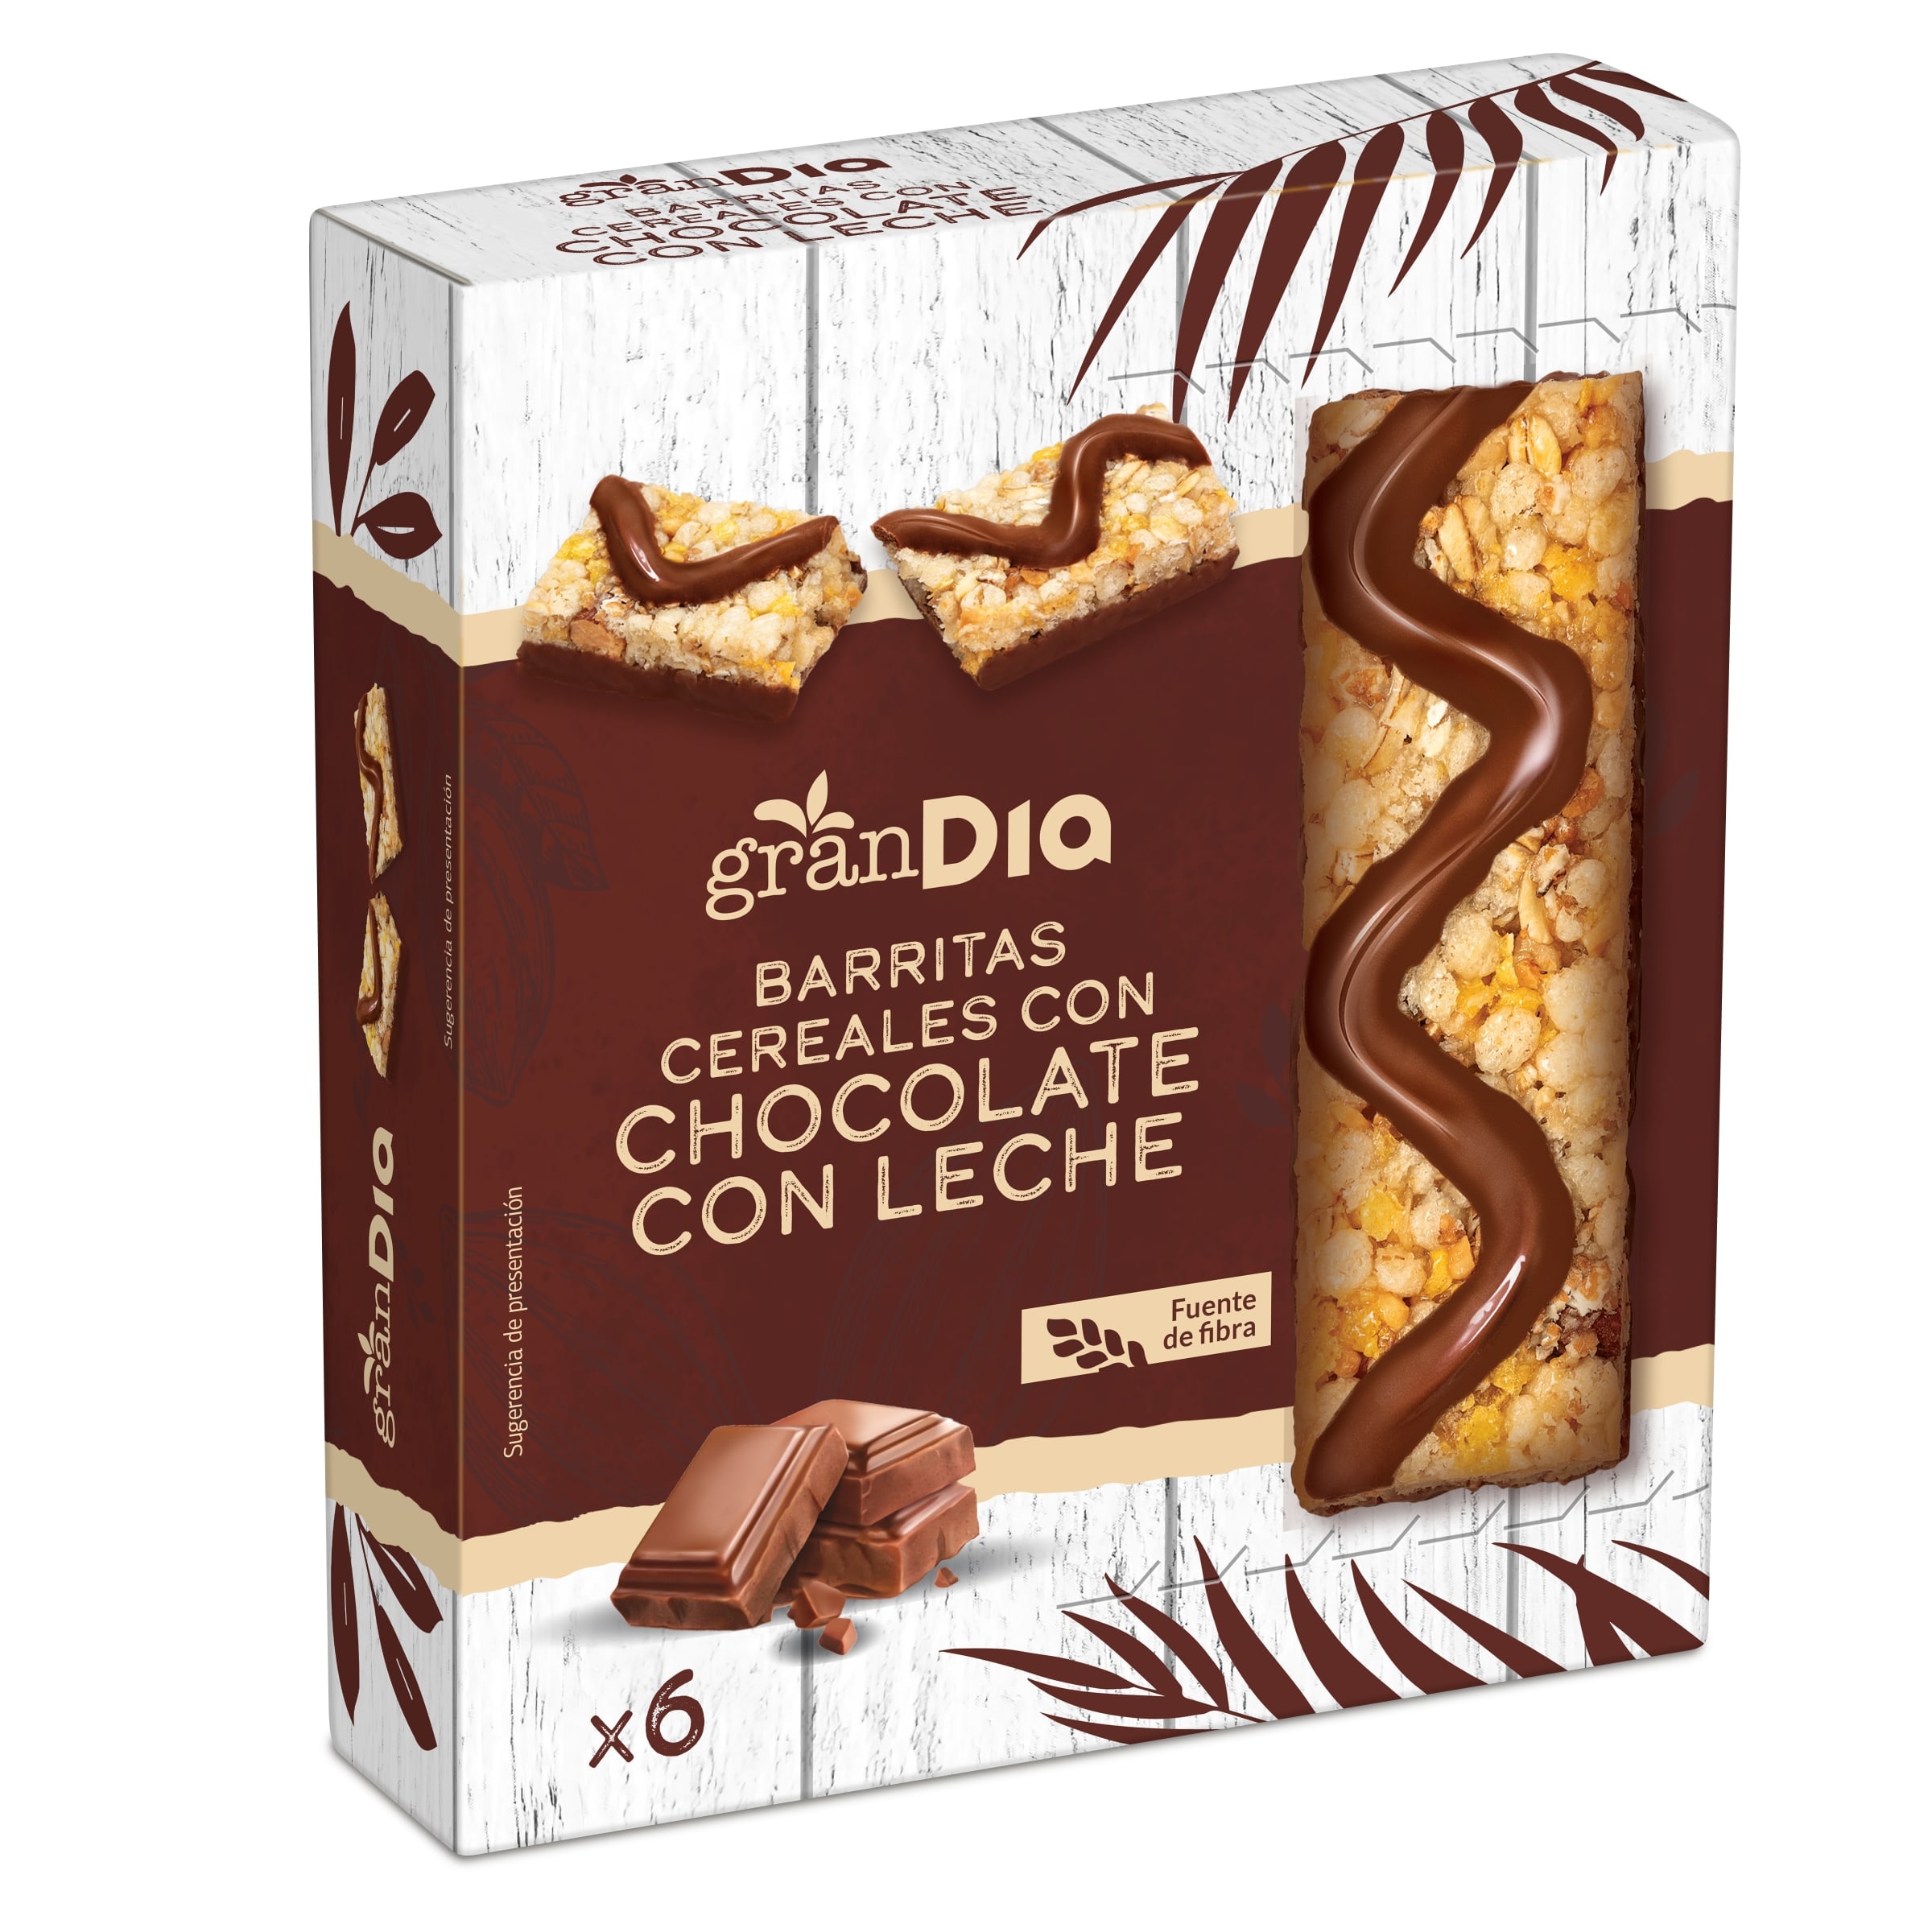 Barritas de cereales con chocolate con leche Gran Dia caja 150 g -  Supermercados DIA